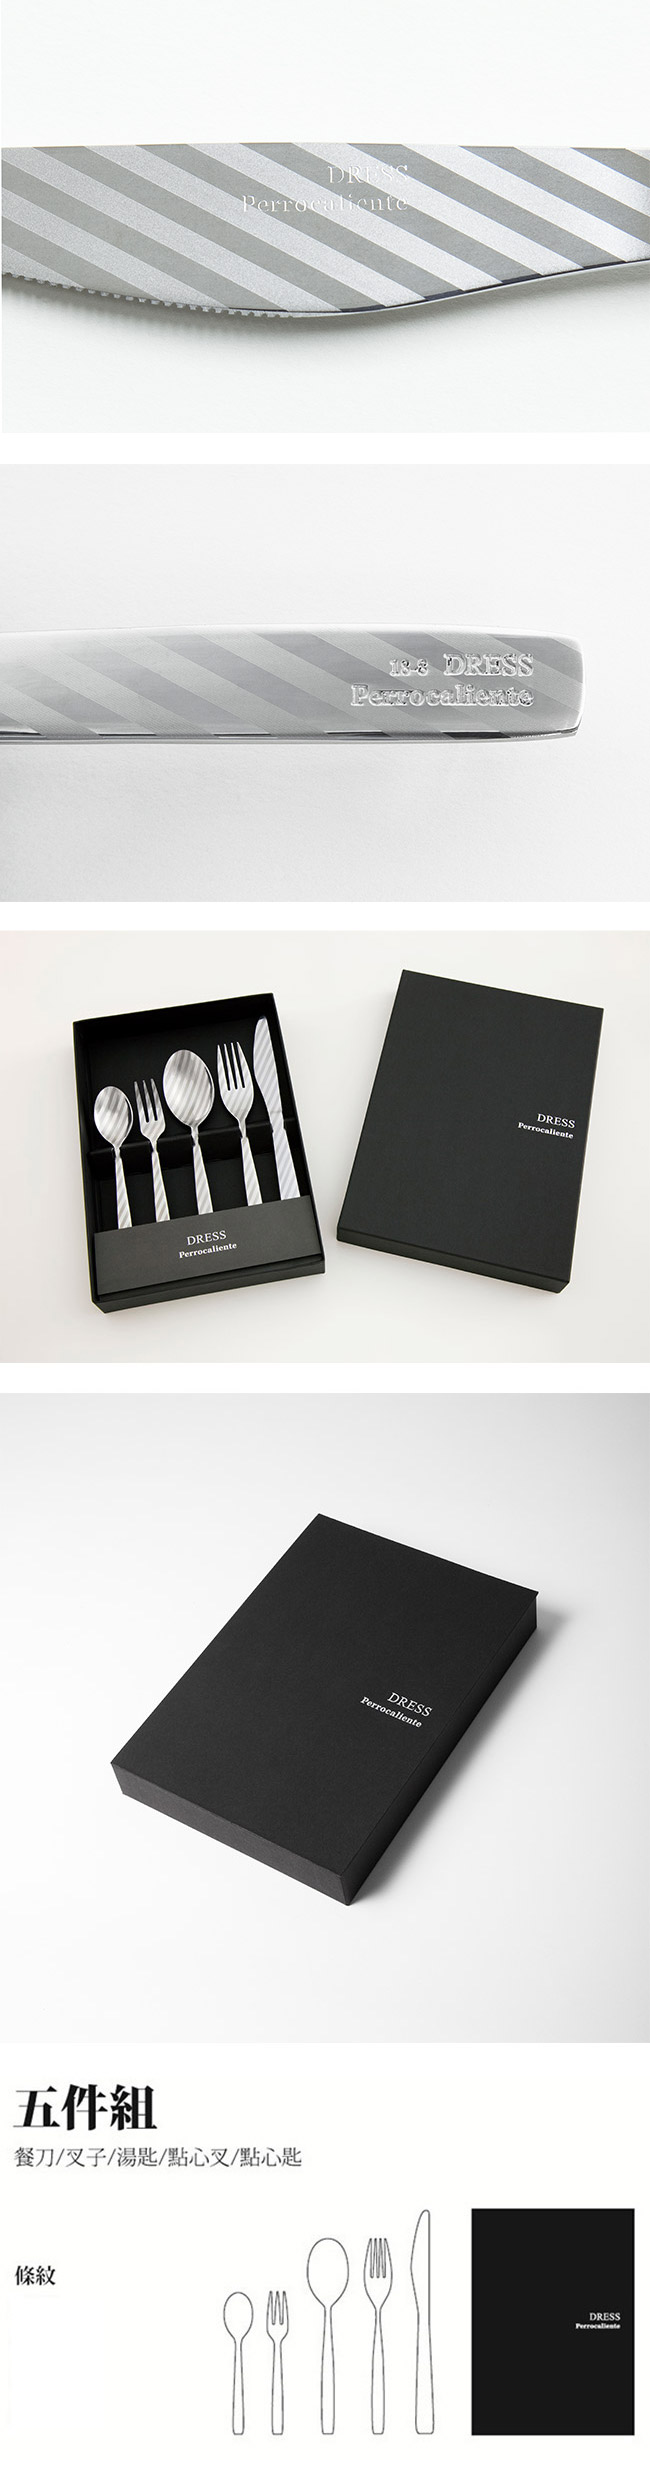 【4/23~4/29精選品牌9折優惠】日本 Perrocaliente Dress Gift Set 銀色盒裝餐具組 五件組 條紋